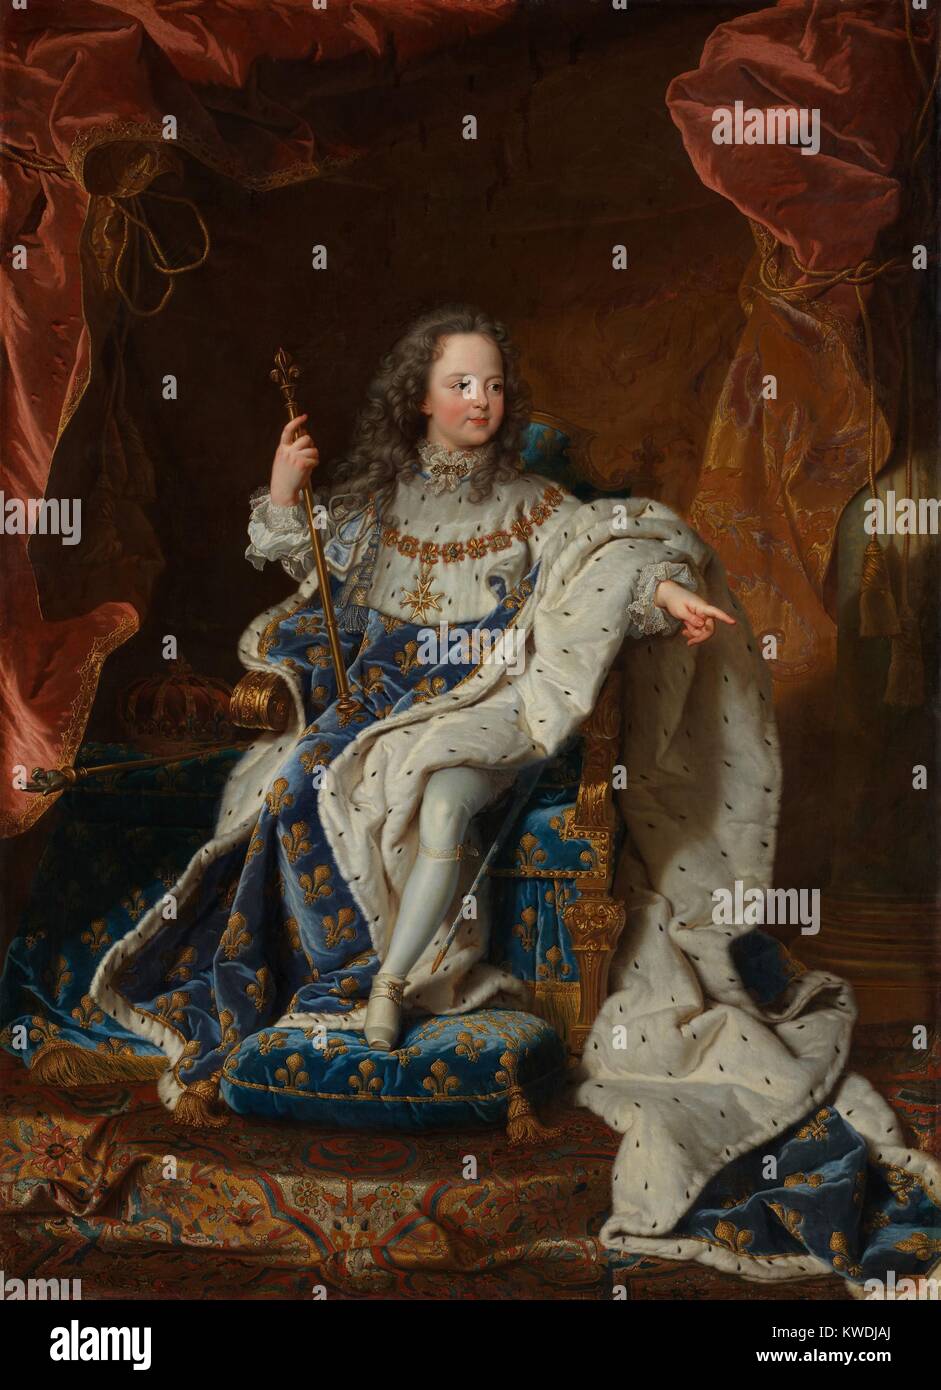 LOUIS XV, par Hyacinthe Rigaud, 1714, la peinture baroque français, huile sur toile. Il monte sur le trône à l'âge de 5 ans, succédant à son grand-père, et régna de 1714 à 1774 (BSLOC   2017 10 111) Banque D'Images